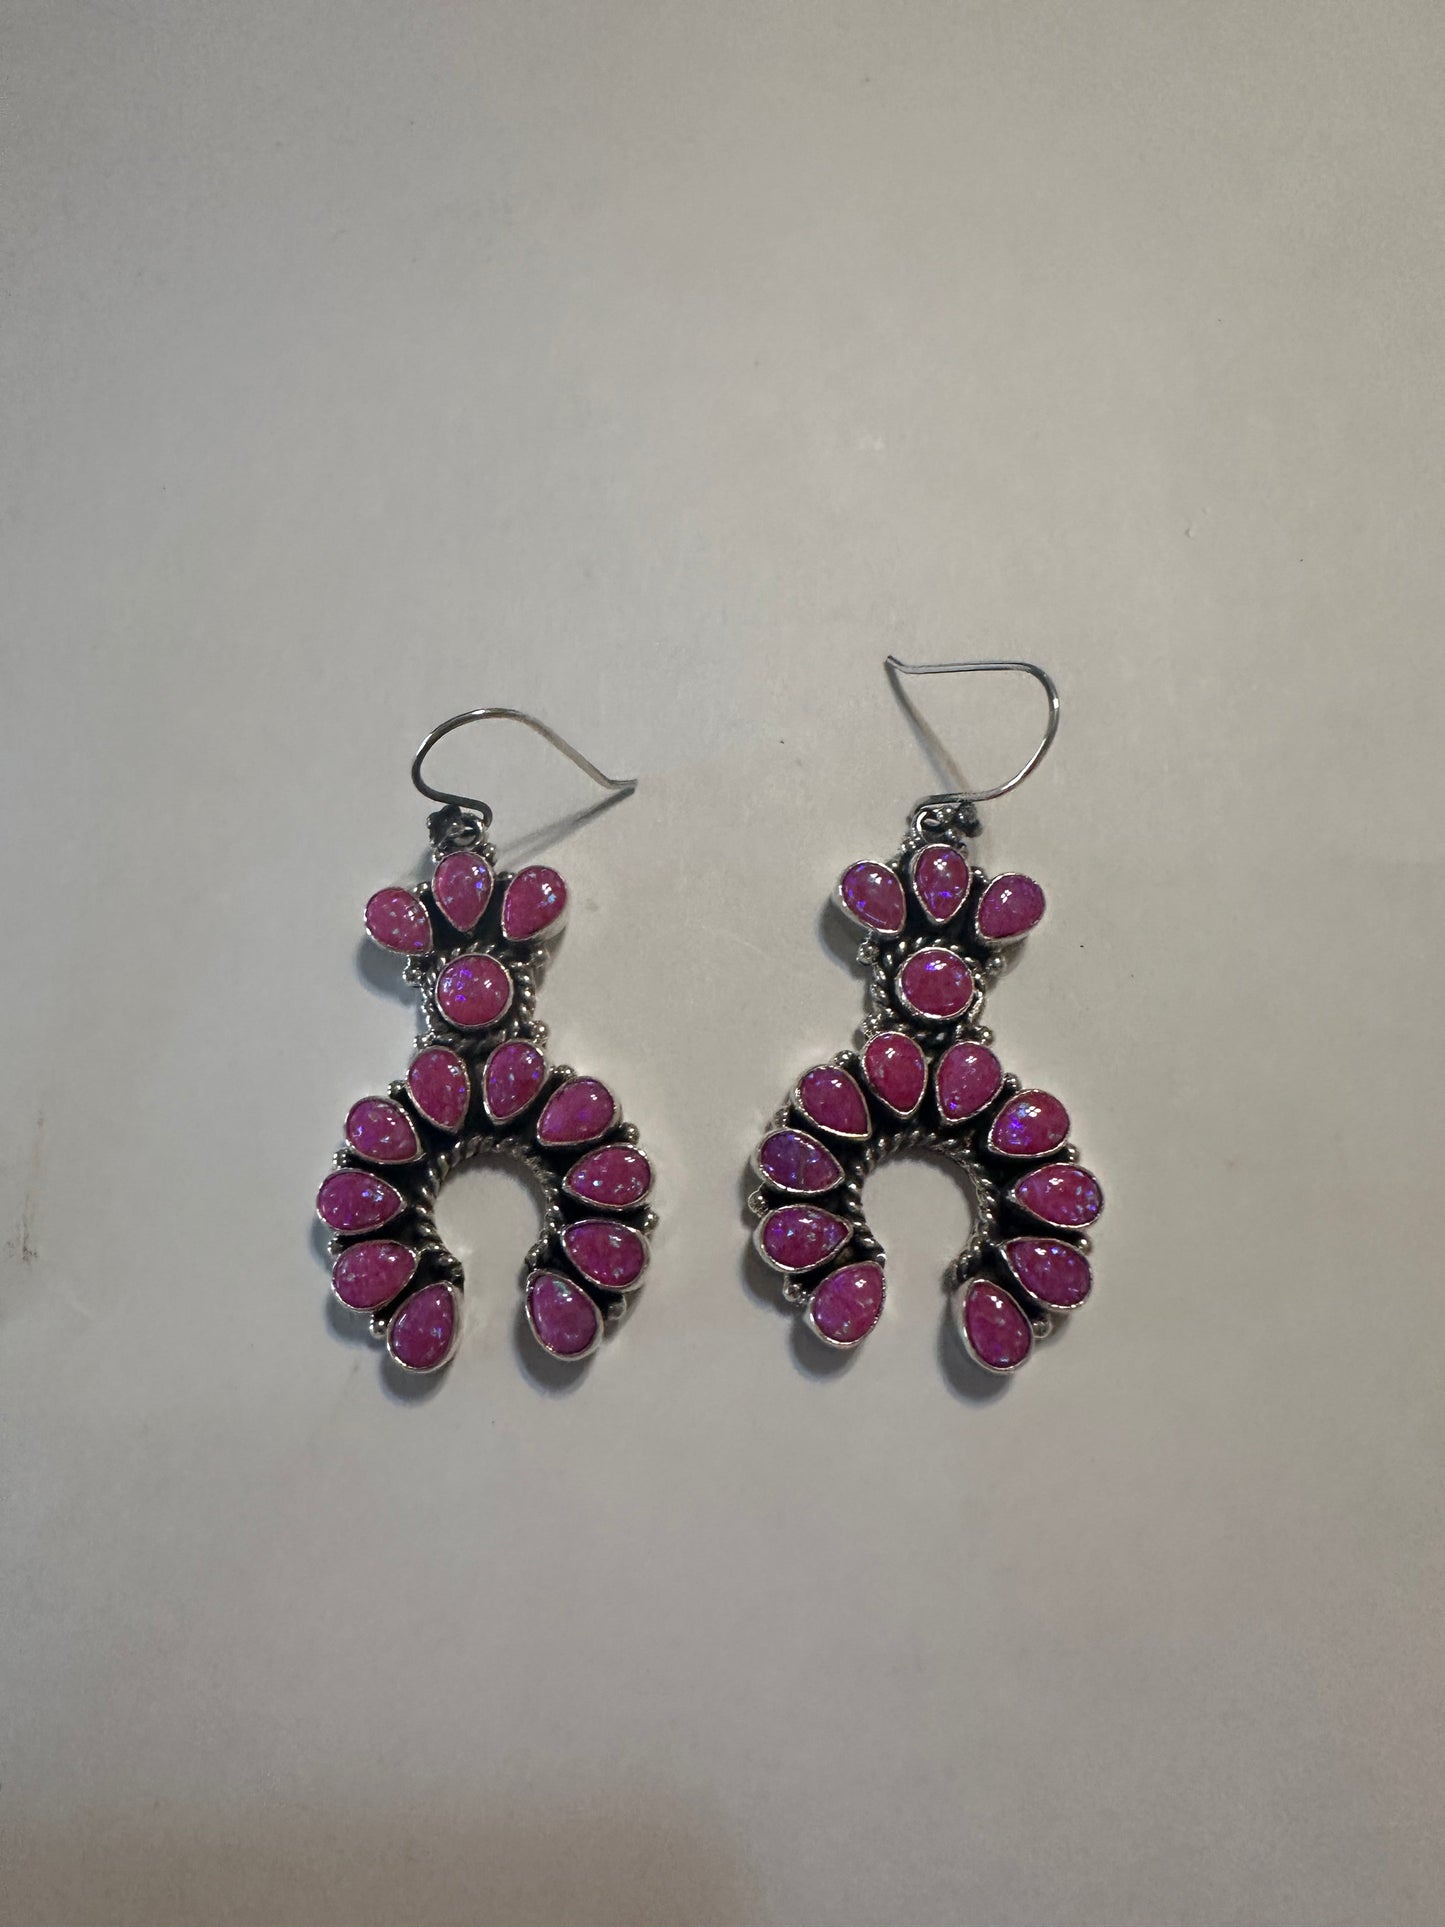 Buy Pink earrings, Chalcedony earrings, Drop shape silver earrings online  at aStudio1980.com